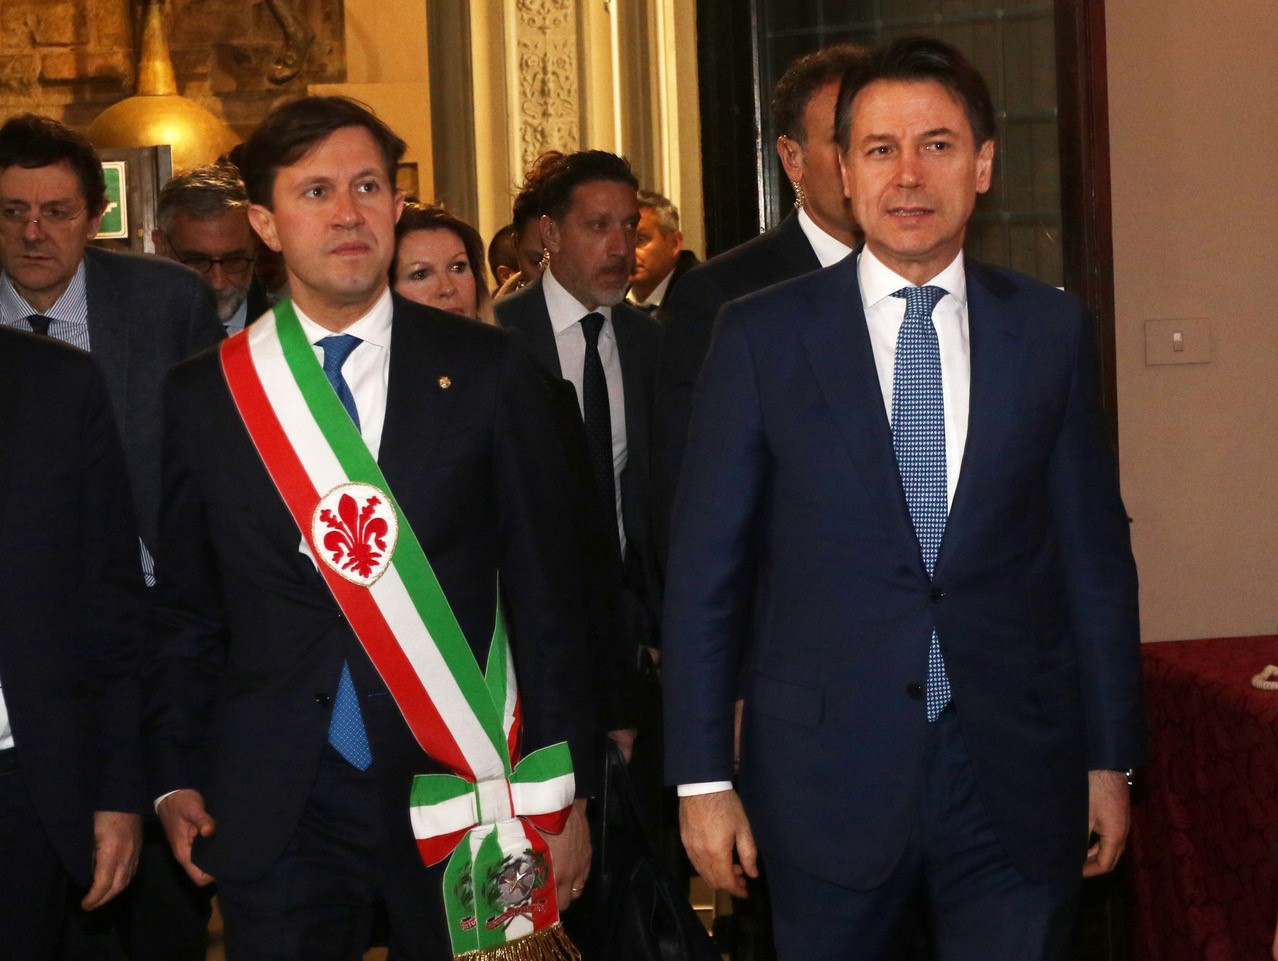 Sindaco Nardella con Presidente Ministri Conte 6